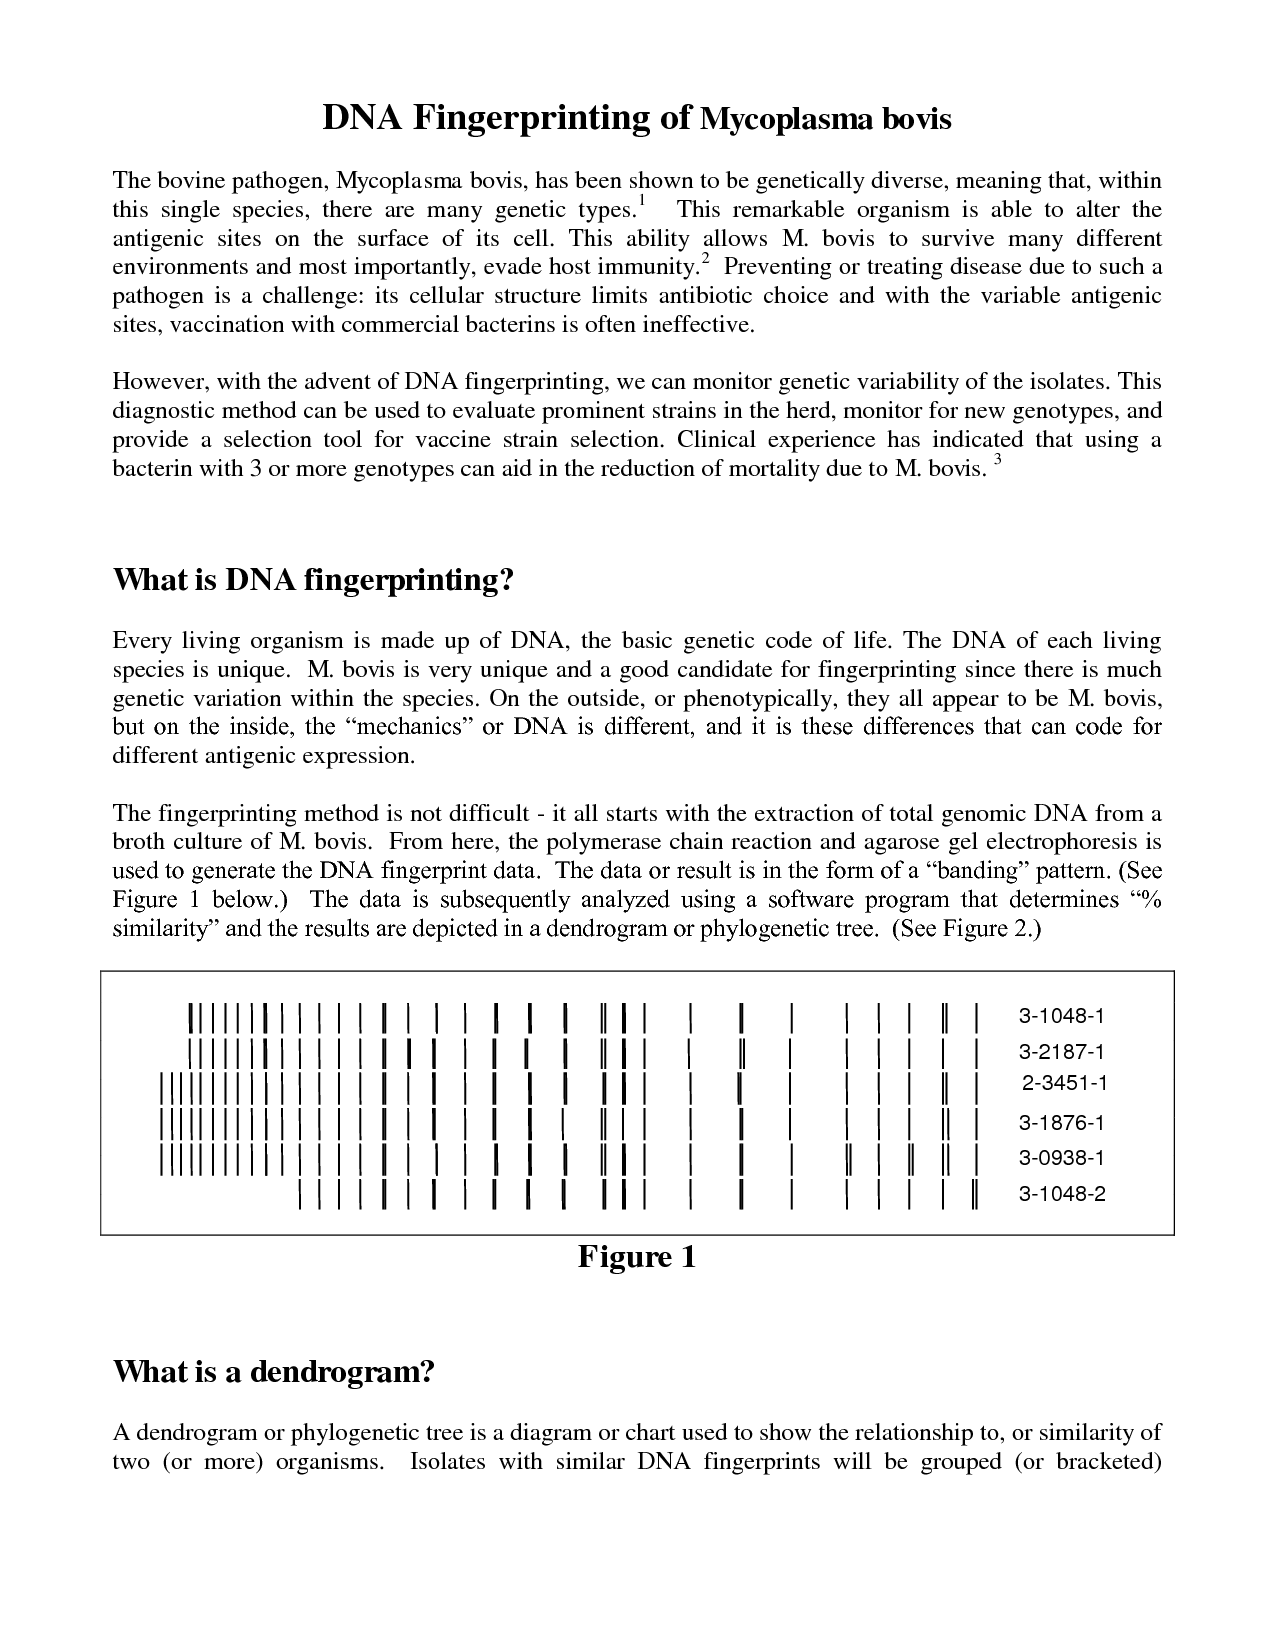 DNA Fingerprinting Worksheet Answers Image